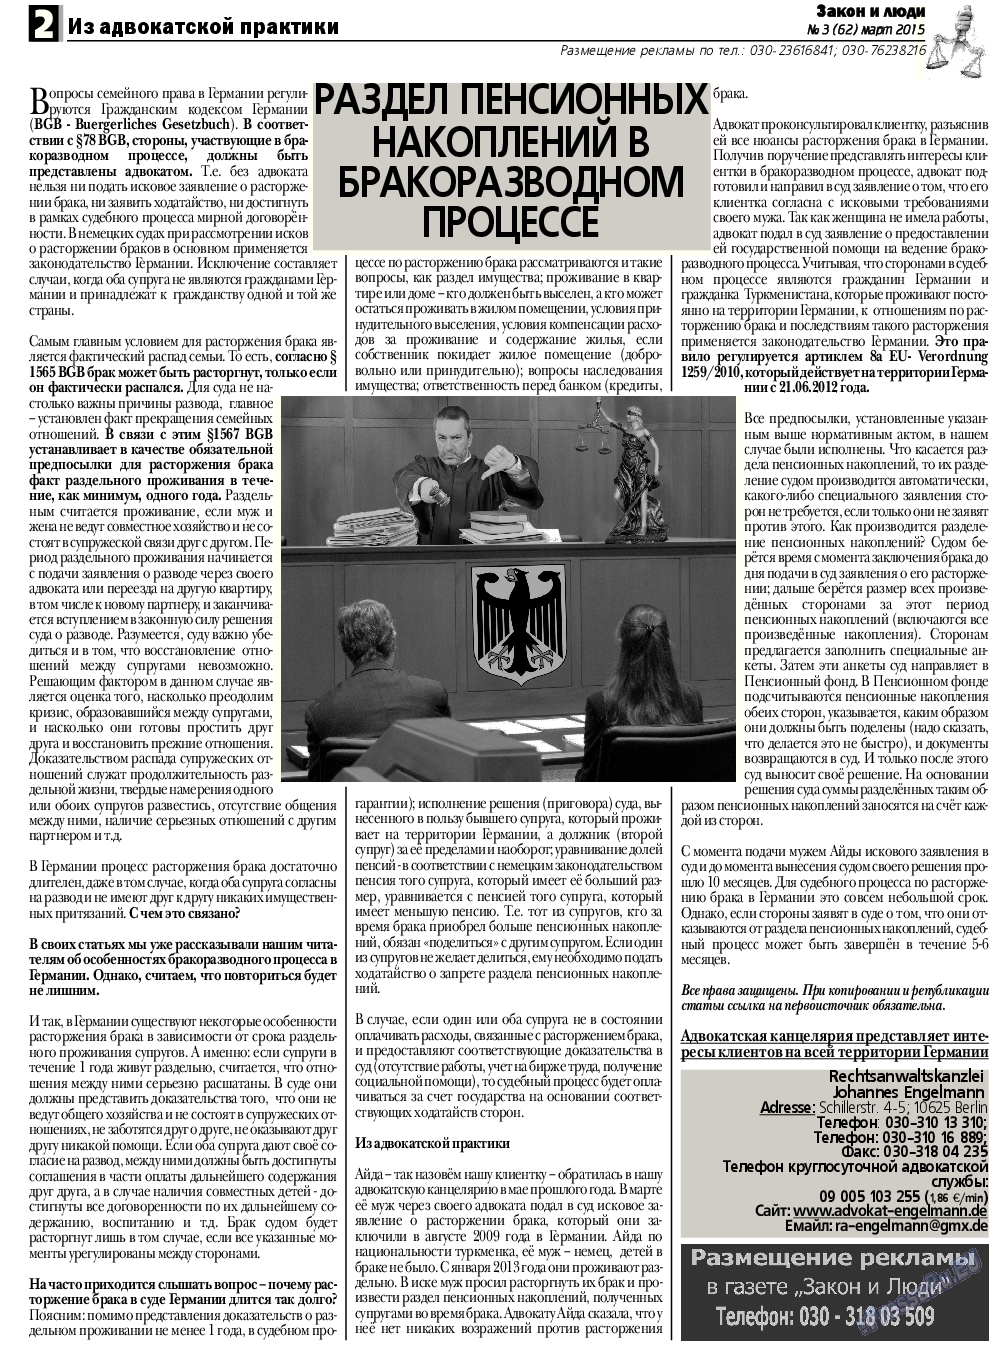 Закон и люди, газета. 2015 №3 стр.2